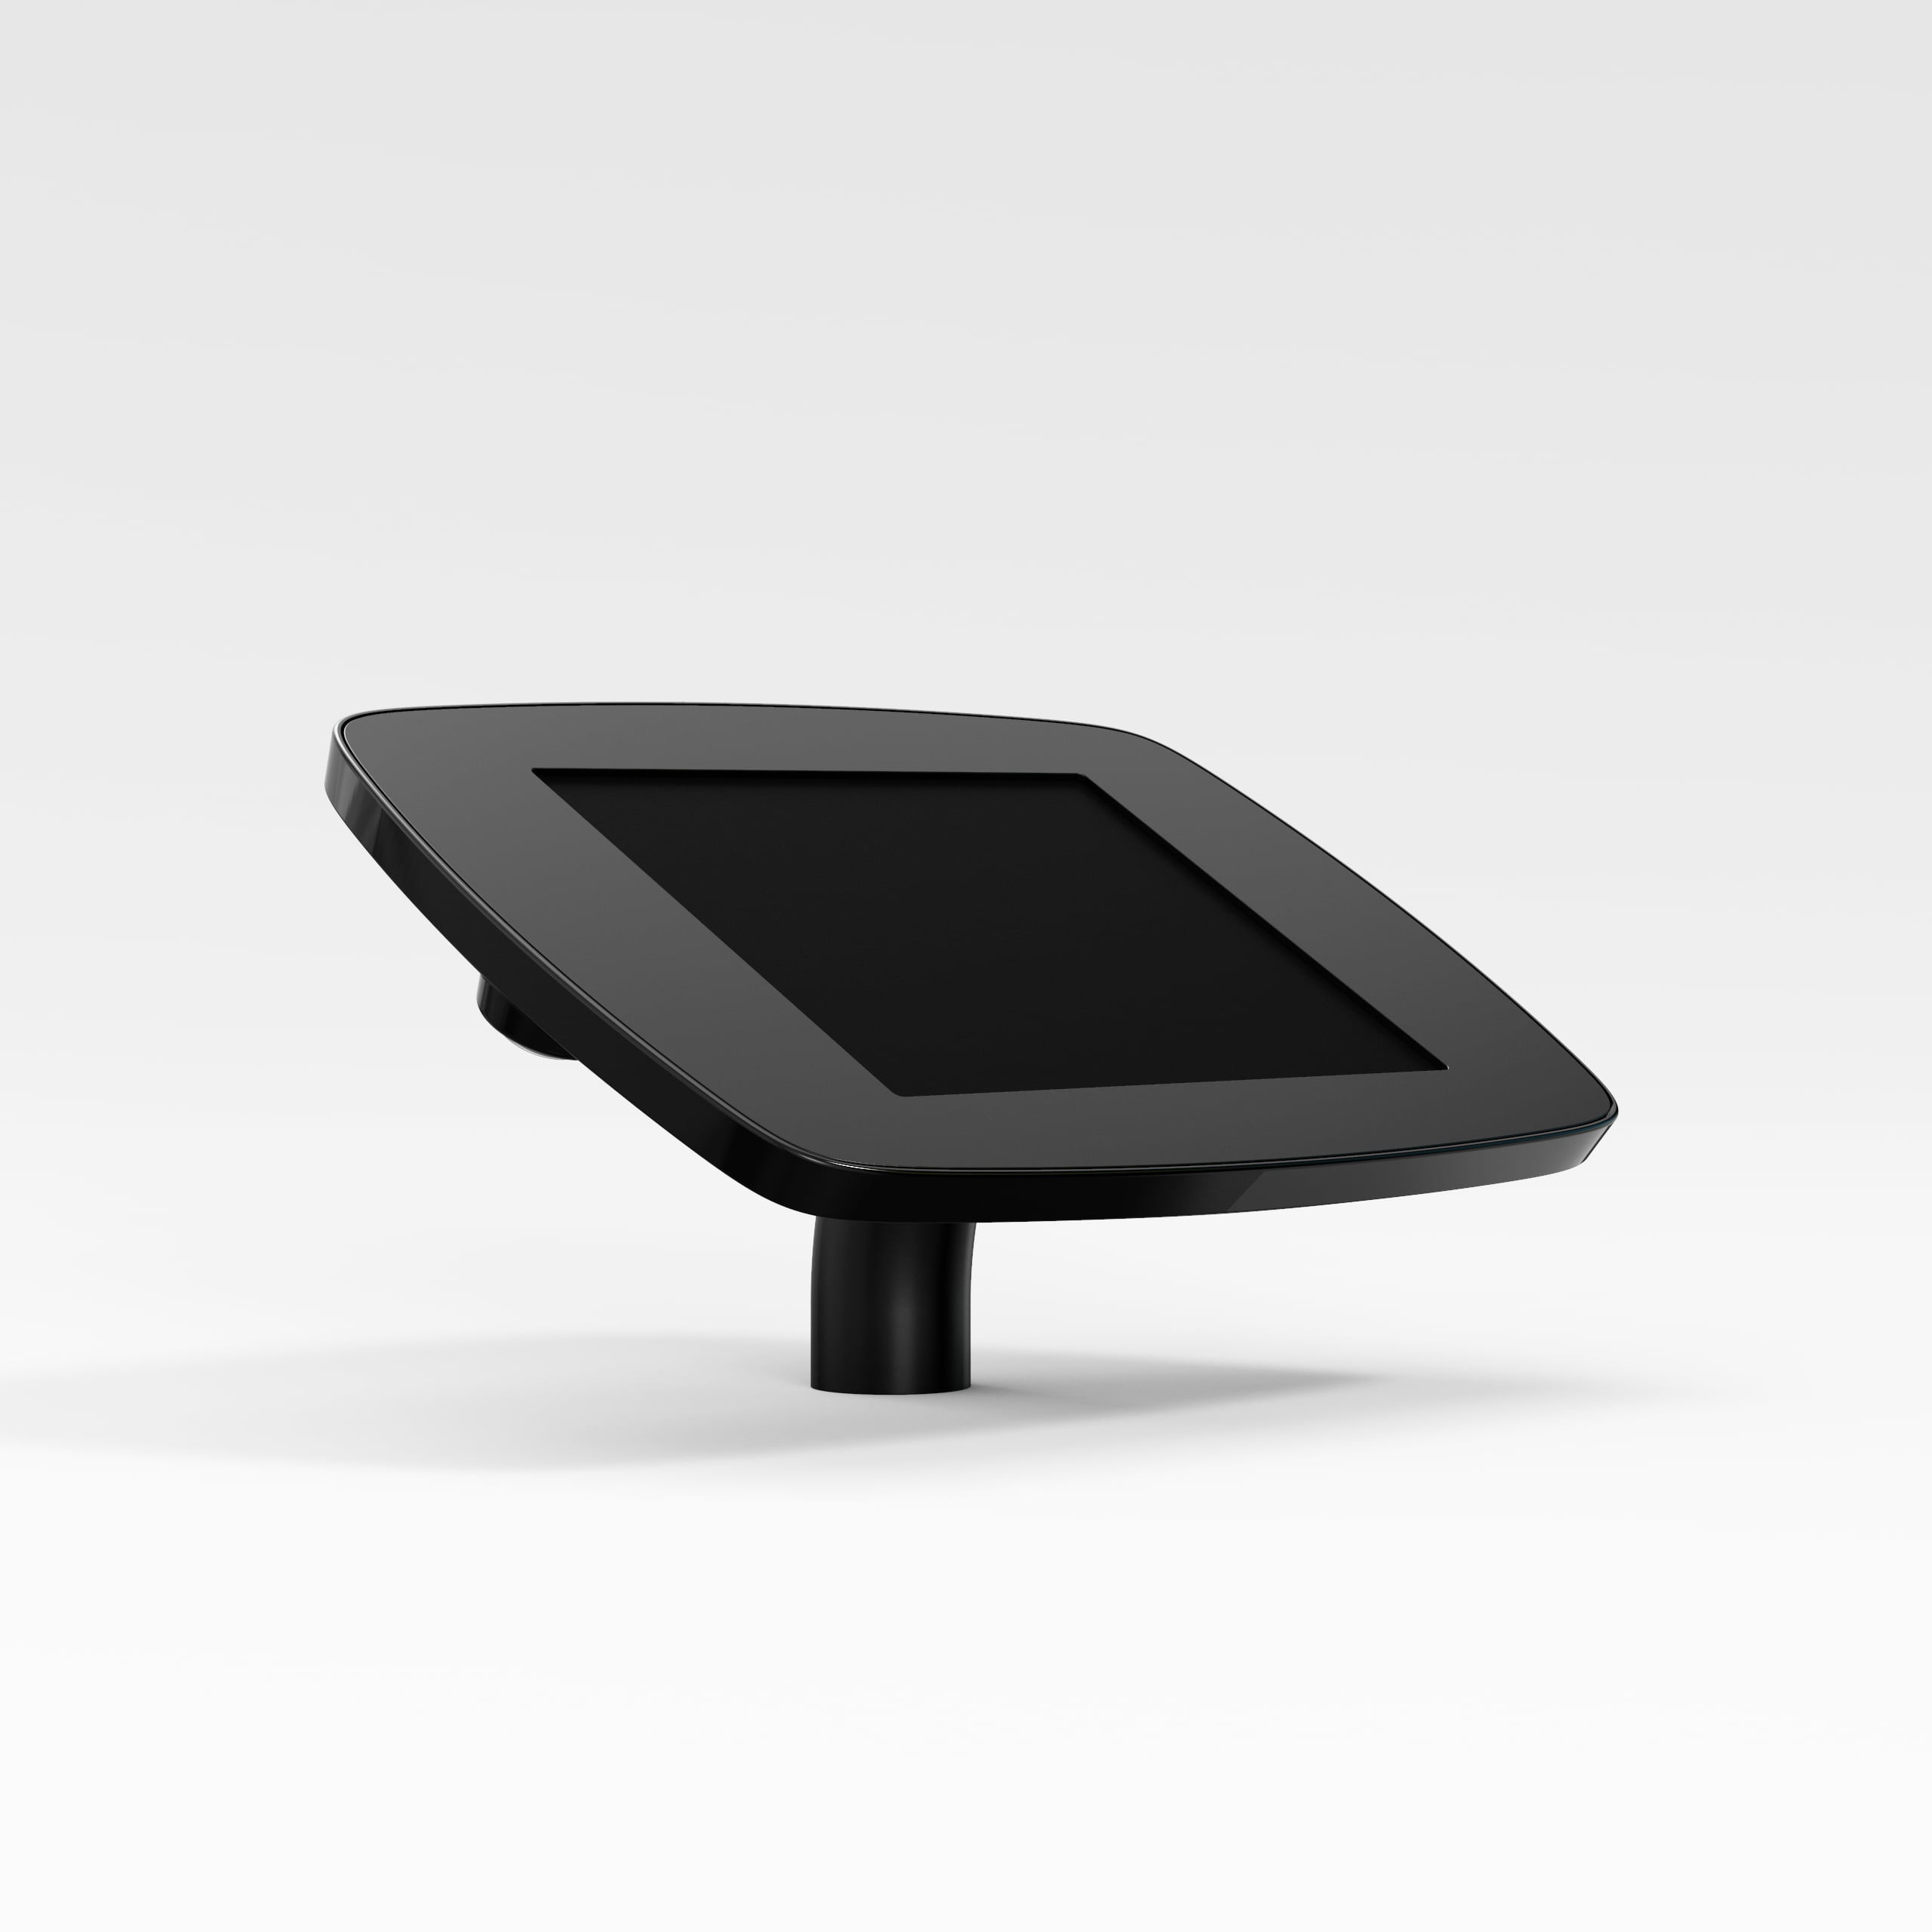 Bouncepad Desk supporto antifurto per tablet 20,1 cm [7.9] Nero (DESKBLKOPENCAM/OPENHOME M4)